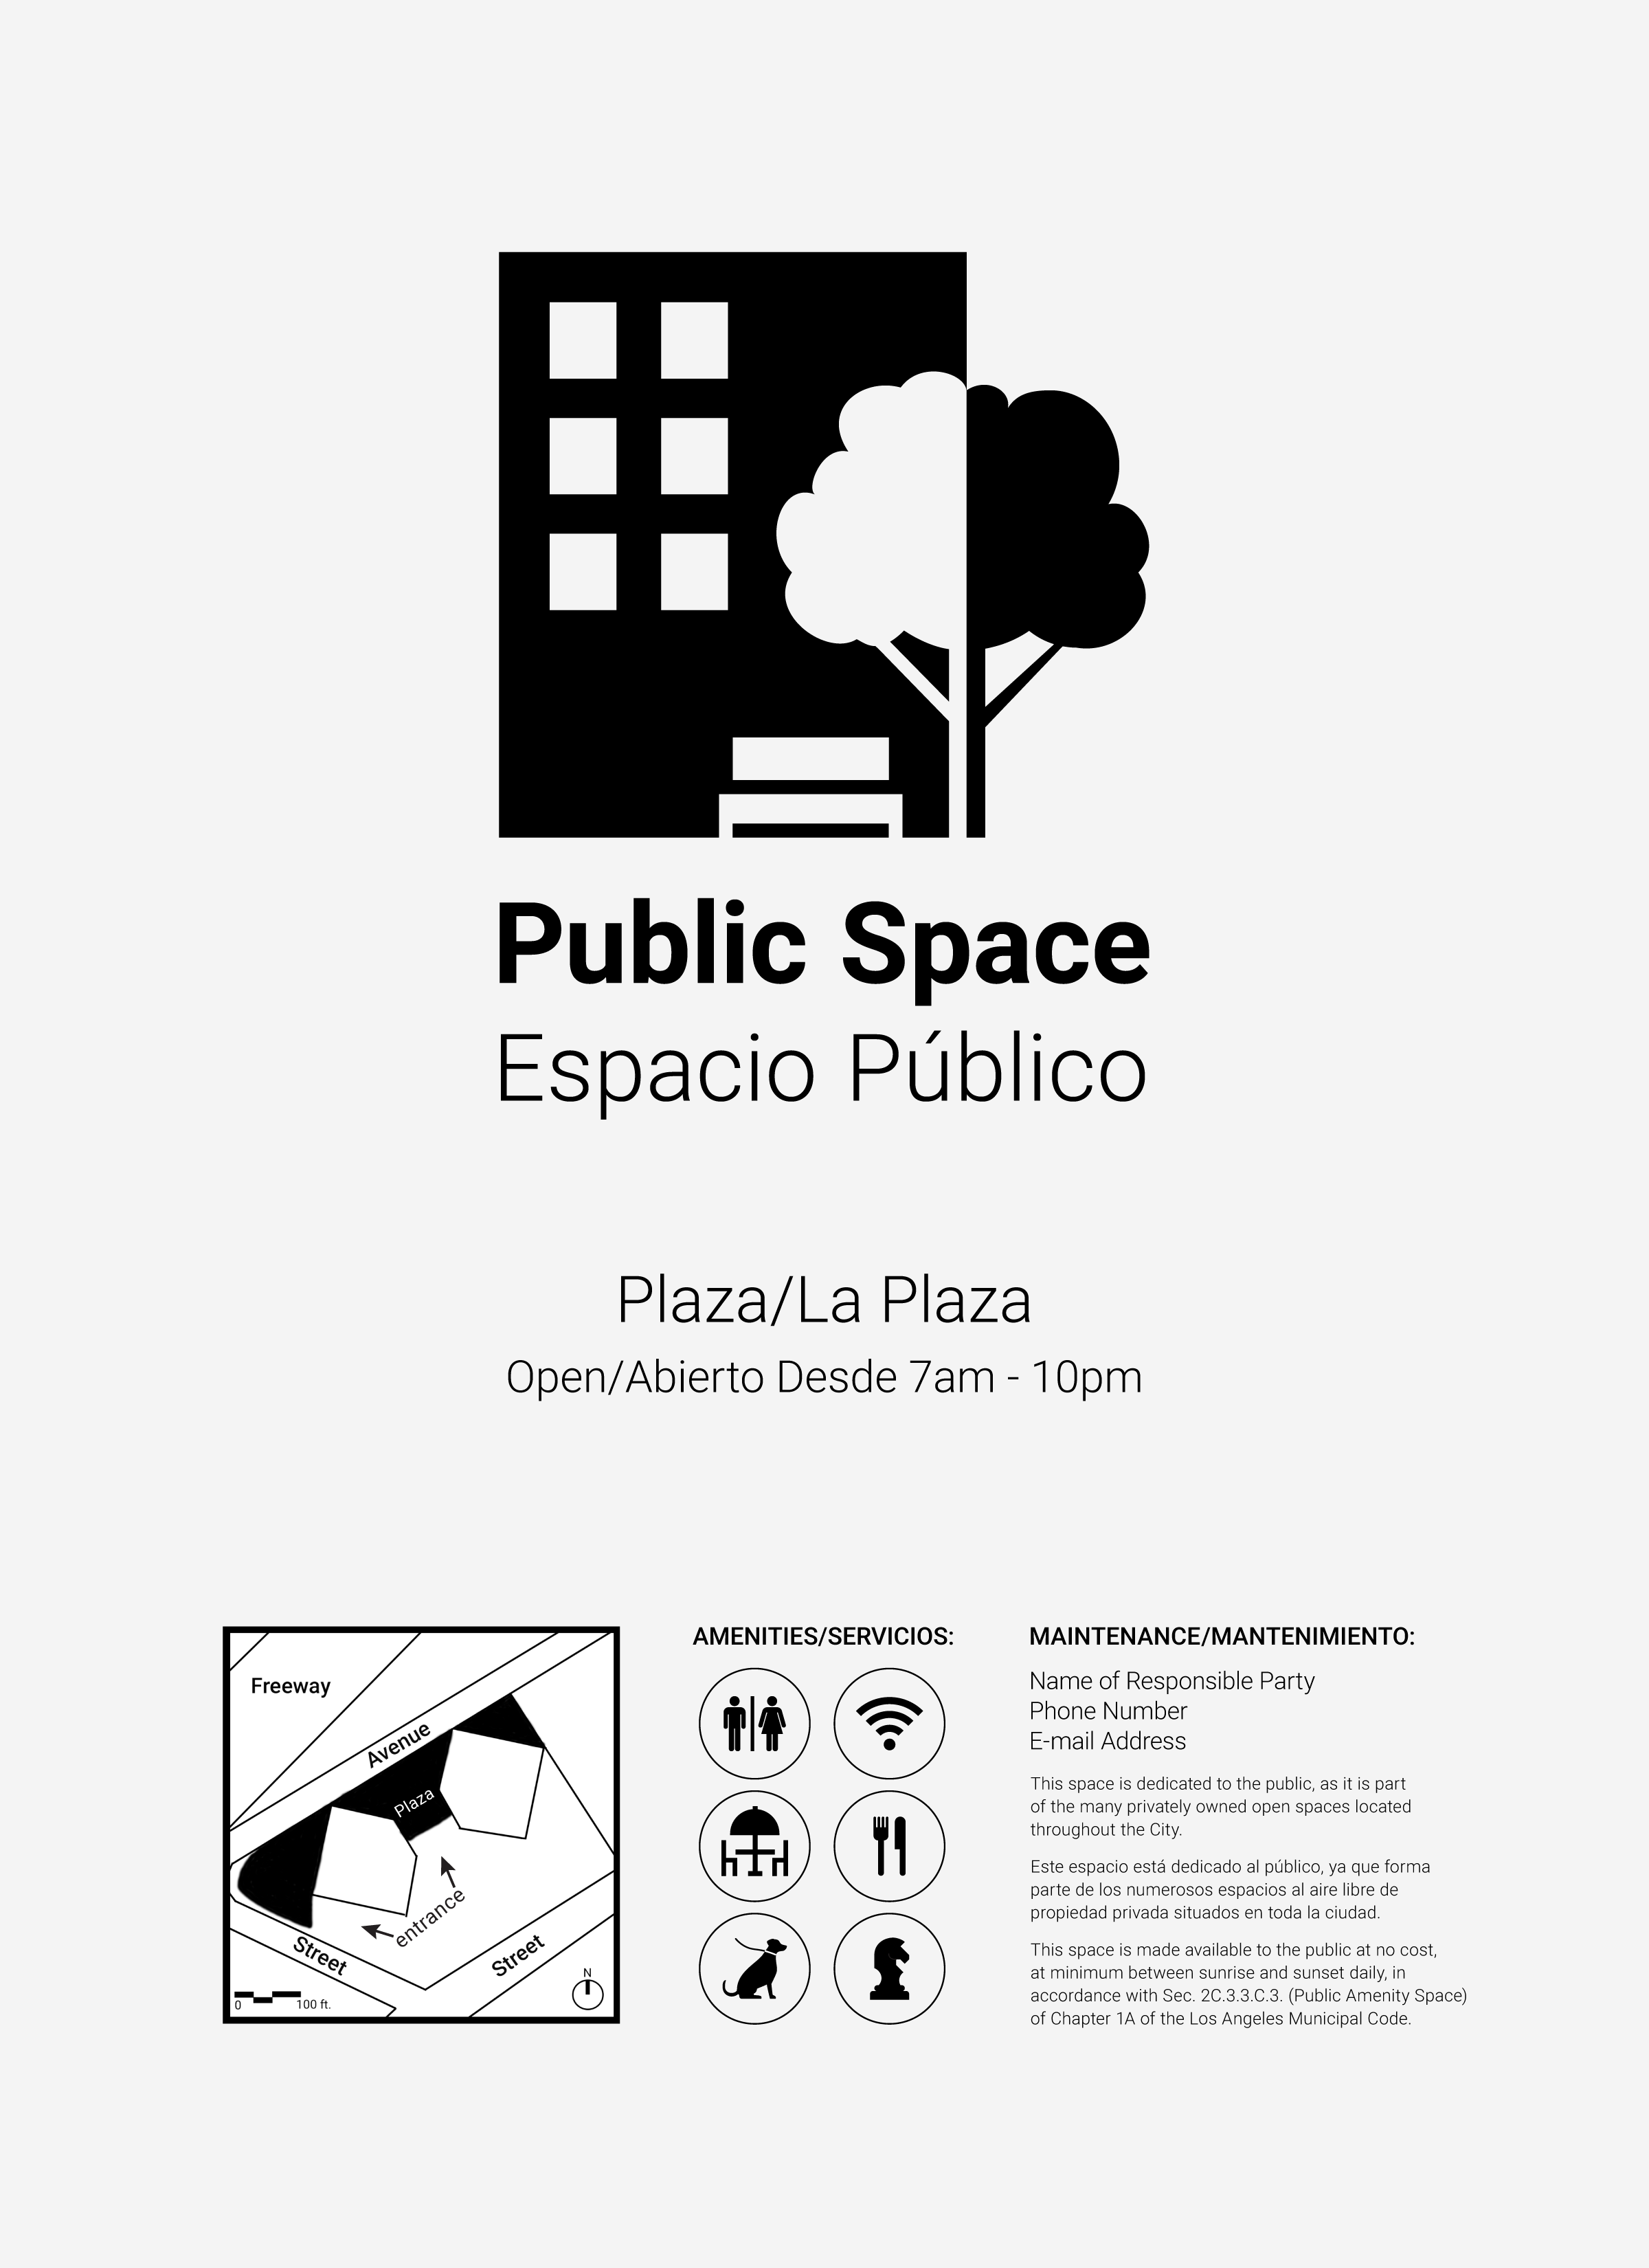 Public Spaces Thumbnail Image